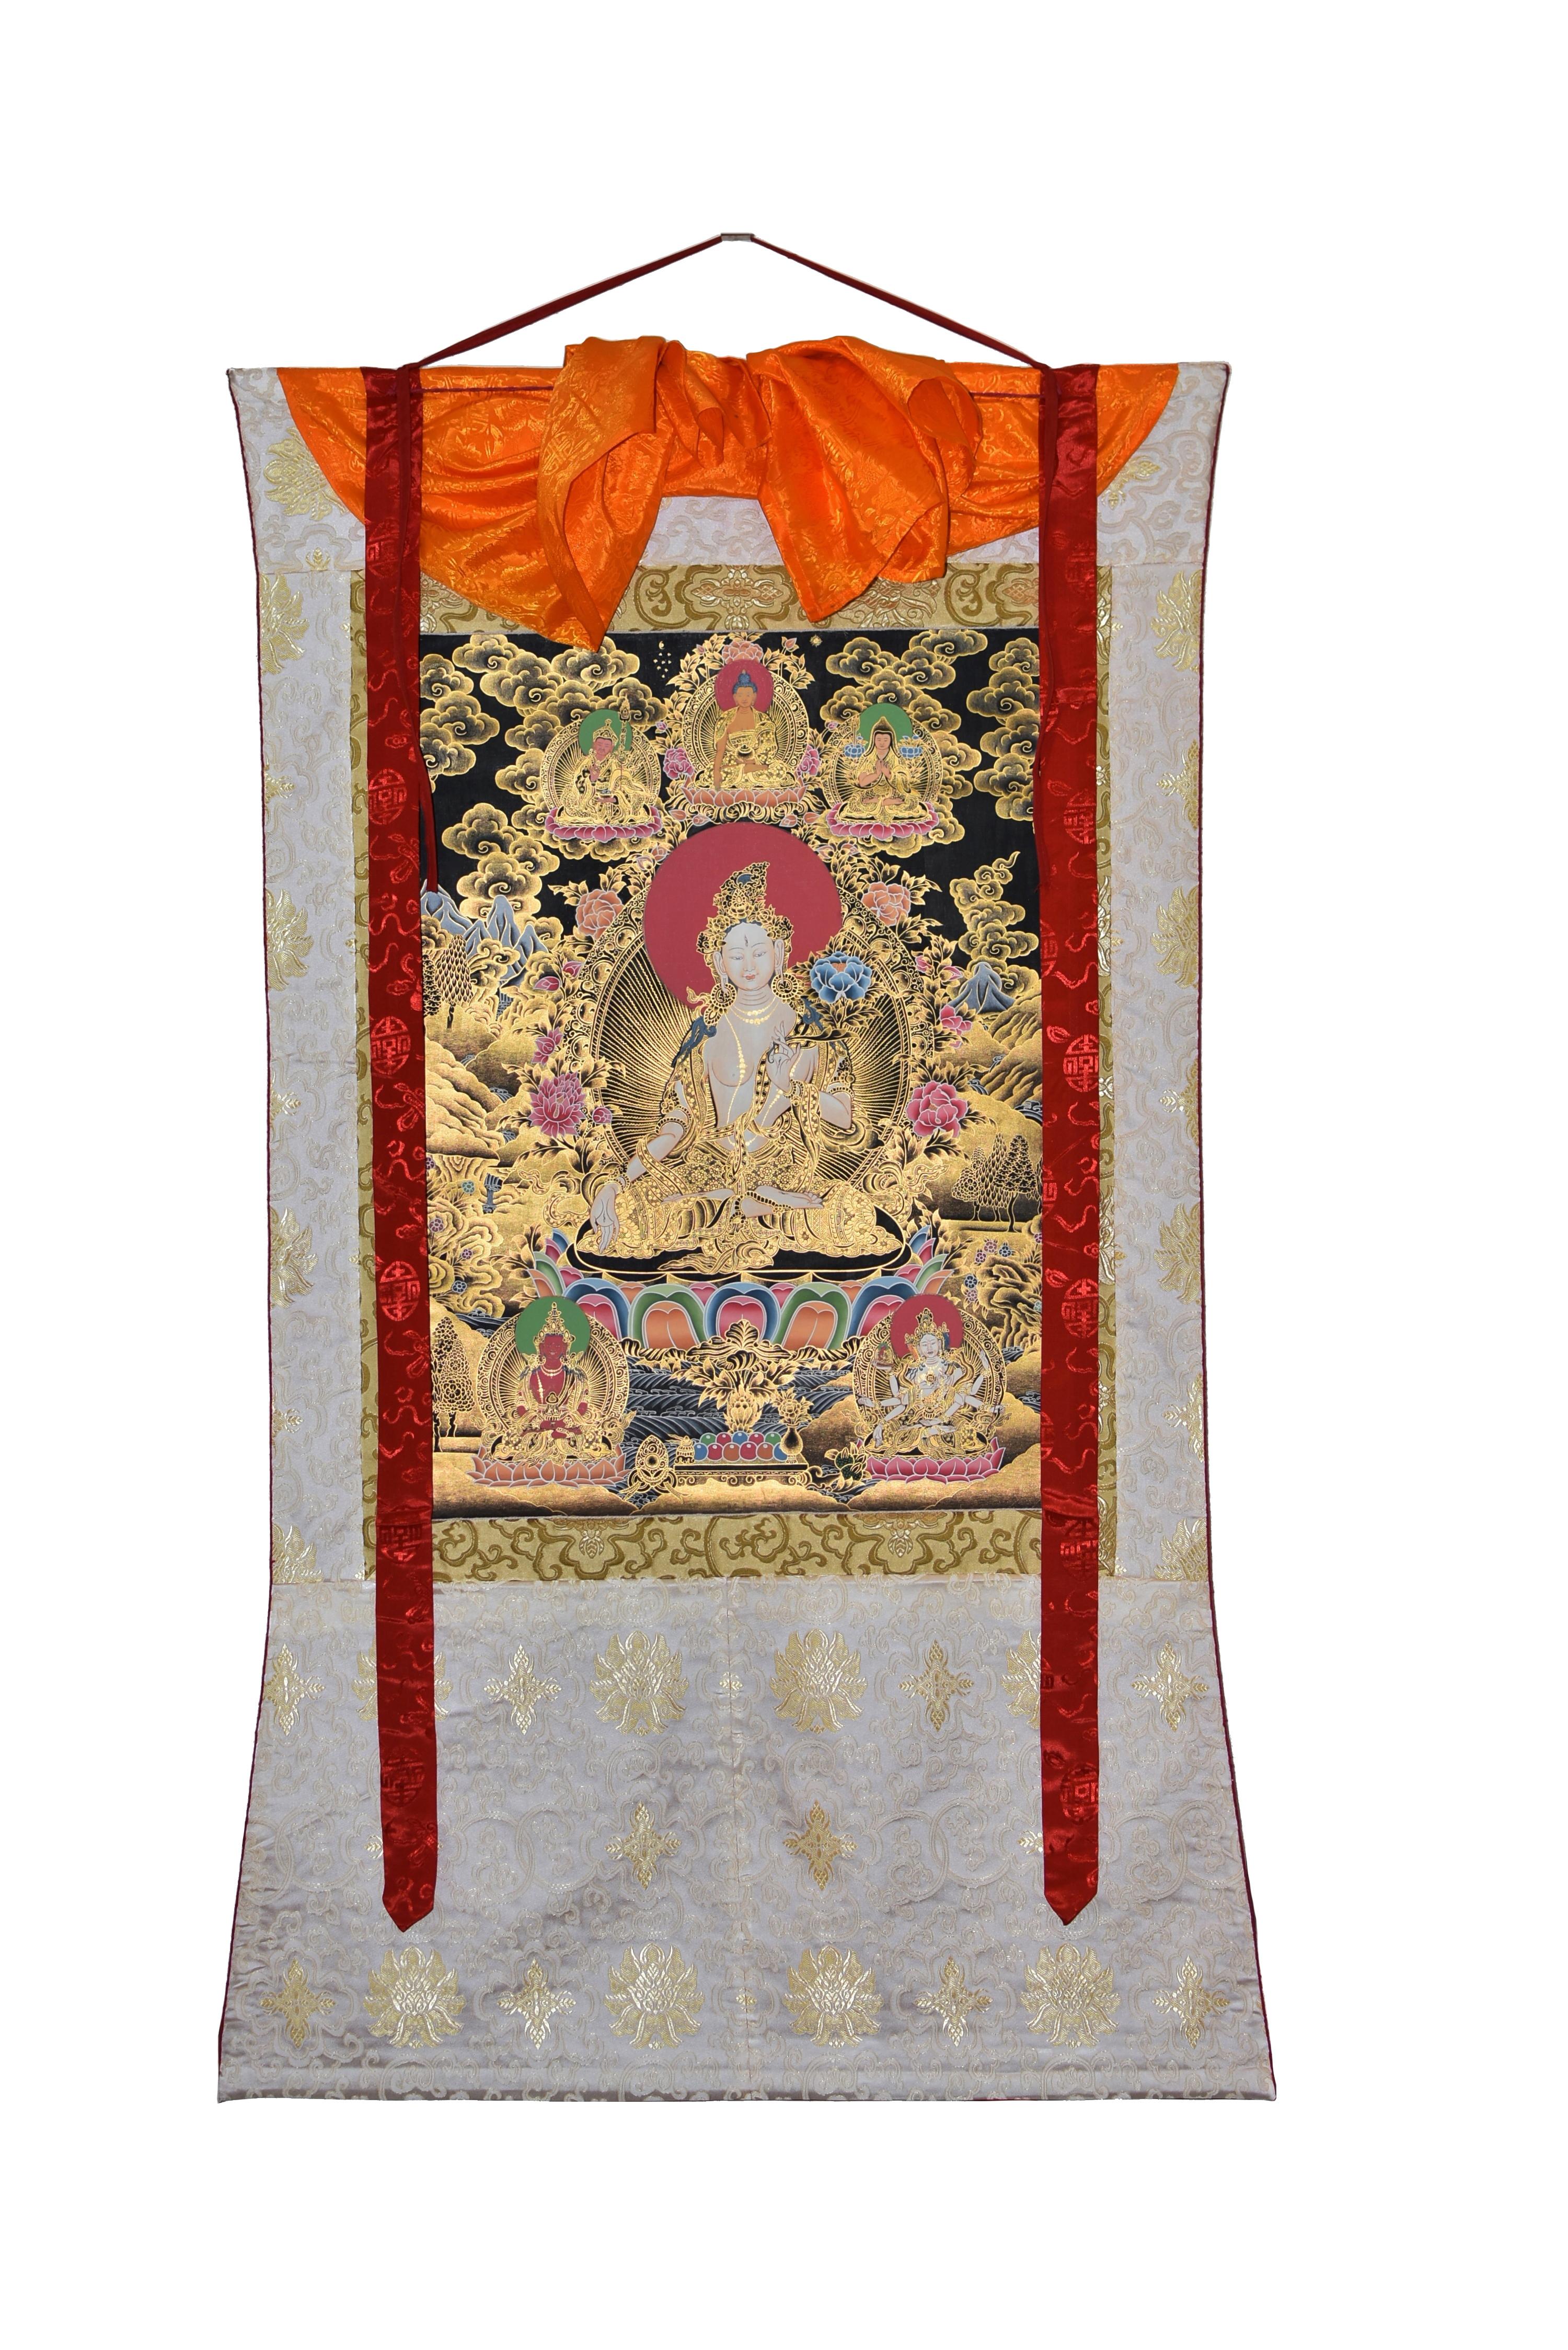 Ein exquisit handbemaltes tibetisches Thangka von einem unserer Meisterkünstler in Nepal, das die majestätische Weiße Tara darstellt. In Dhyana Asana auf einem Lotusthron sitzend, wird ihre ätherische Präsenz durch ihre heitere Miene und ihr